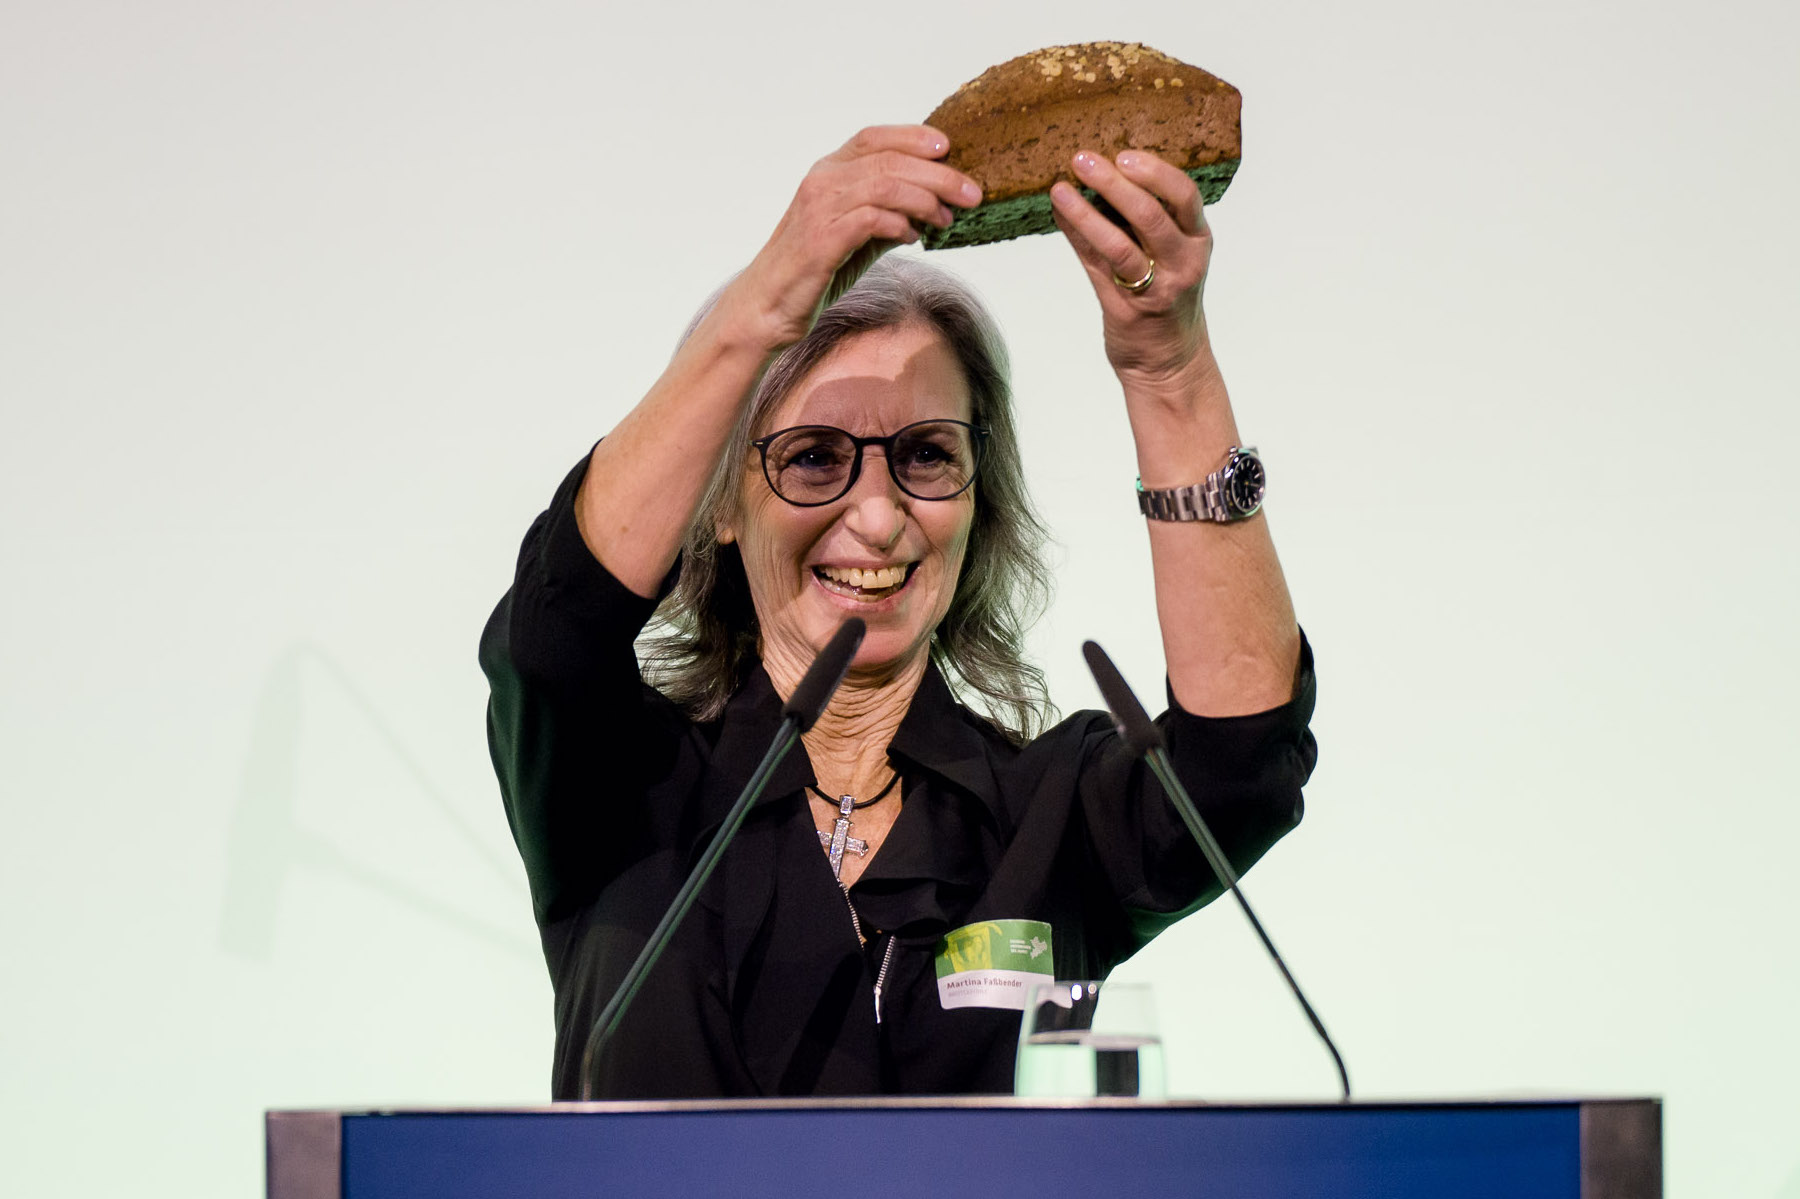 Glutenfreie Bäckerei Brotgefühle ist Sachsens bestes Startup 2022